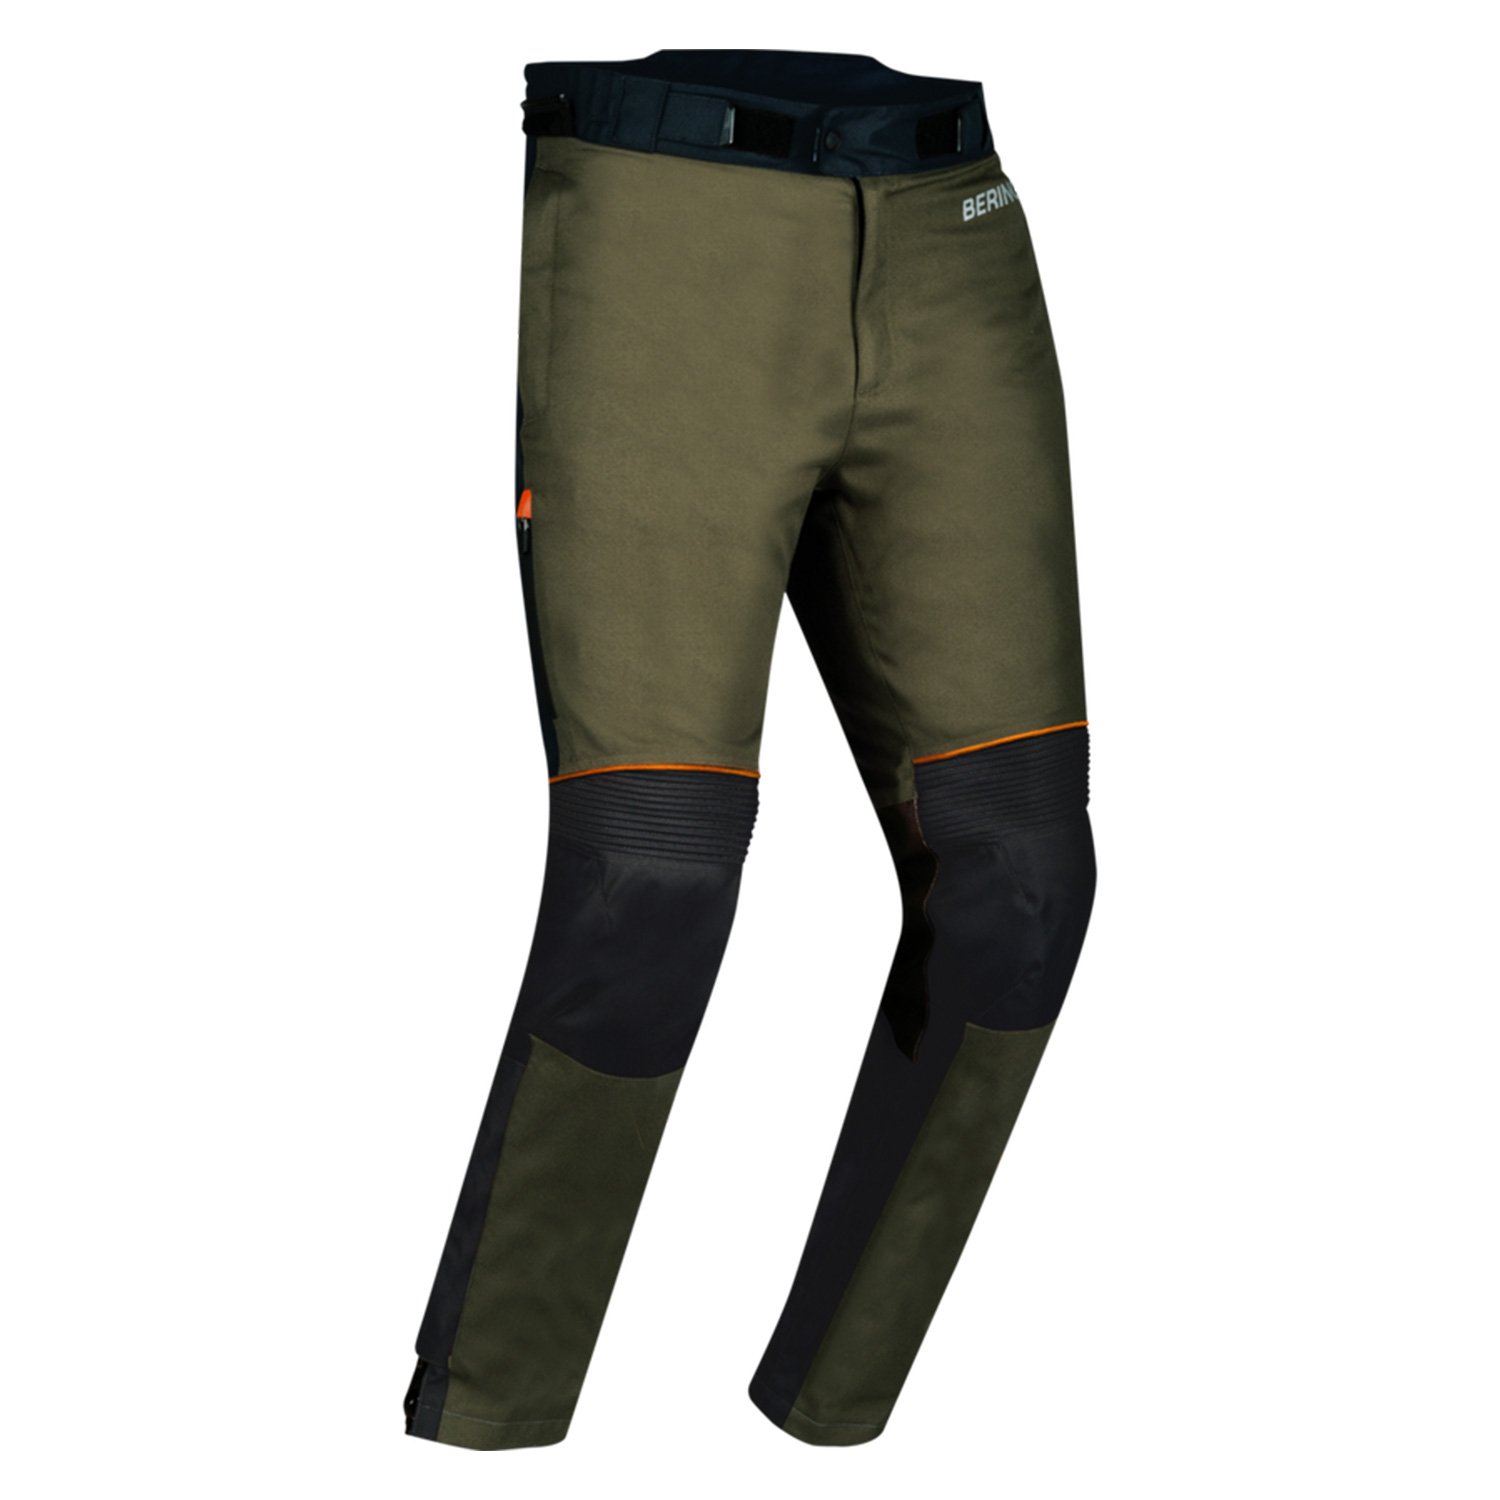 Image of Bering Zephyr Trousers Black Khaki Orange Size M ID 3660815180808